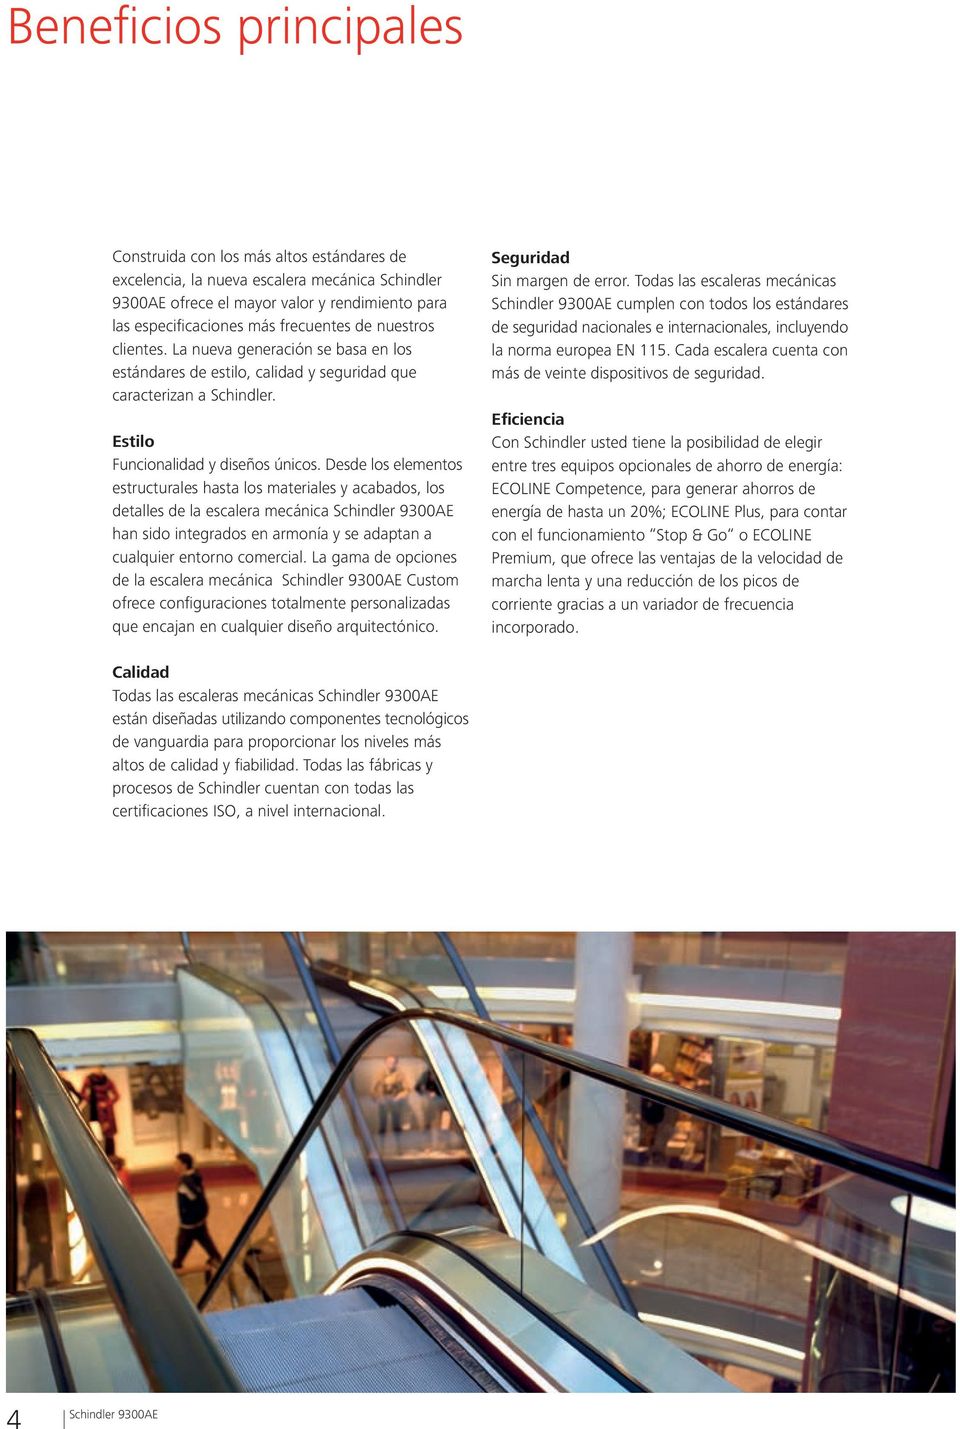 Desde los elementos estructurales hasta los materiales y acabados, los detalles de la escalera mecánica han sido integrados en armonía y se adaptan a cualquier entorno comercial.